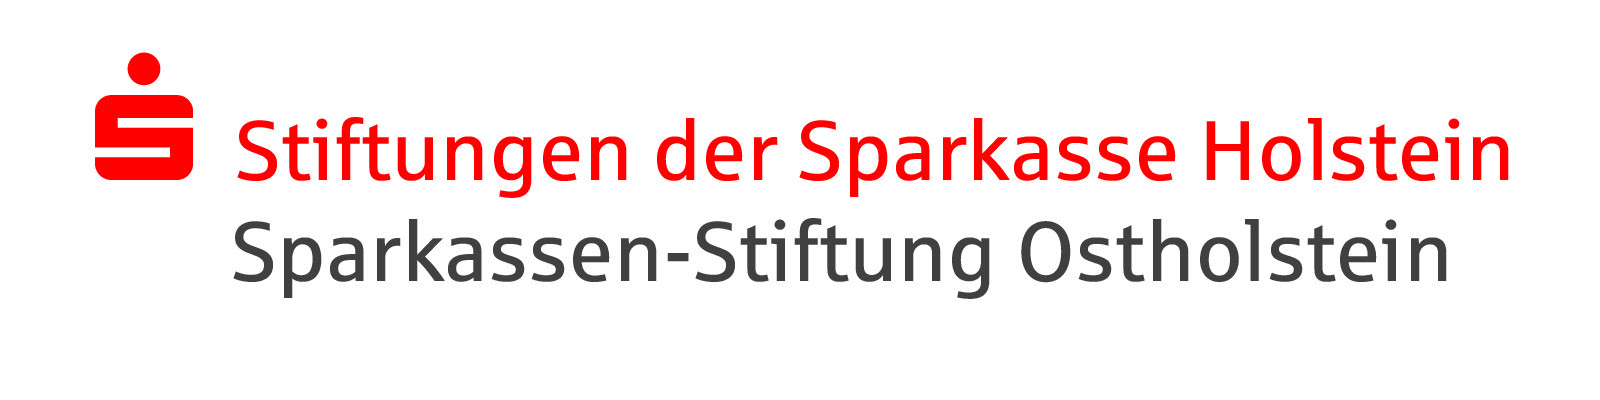 Logo: Stiftung der Sparkasse Holstein, Sparkassen-Stiftung Ostholstein